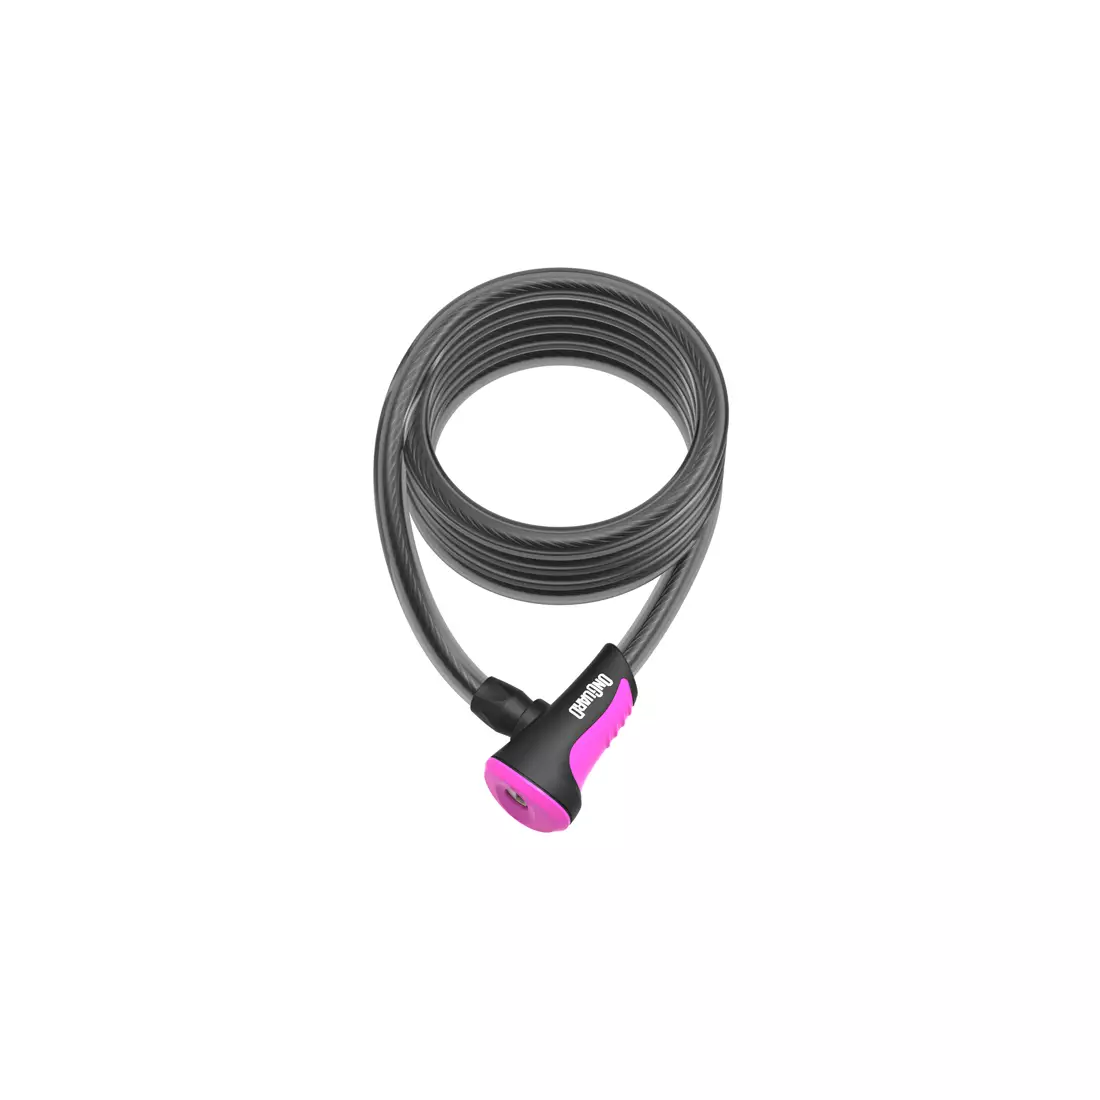 ONGUARD kerékpár csat neon 12mm 180cm + 2 x kulcsok kóddal pink ONG-8156PN